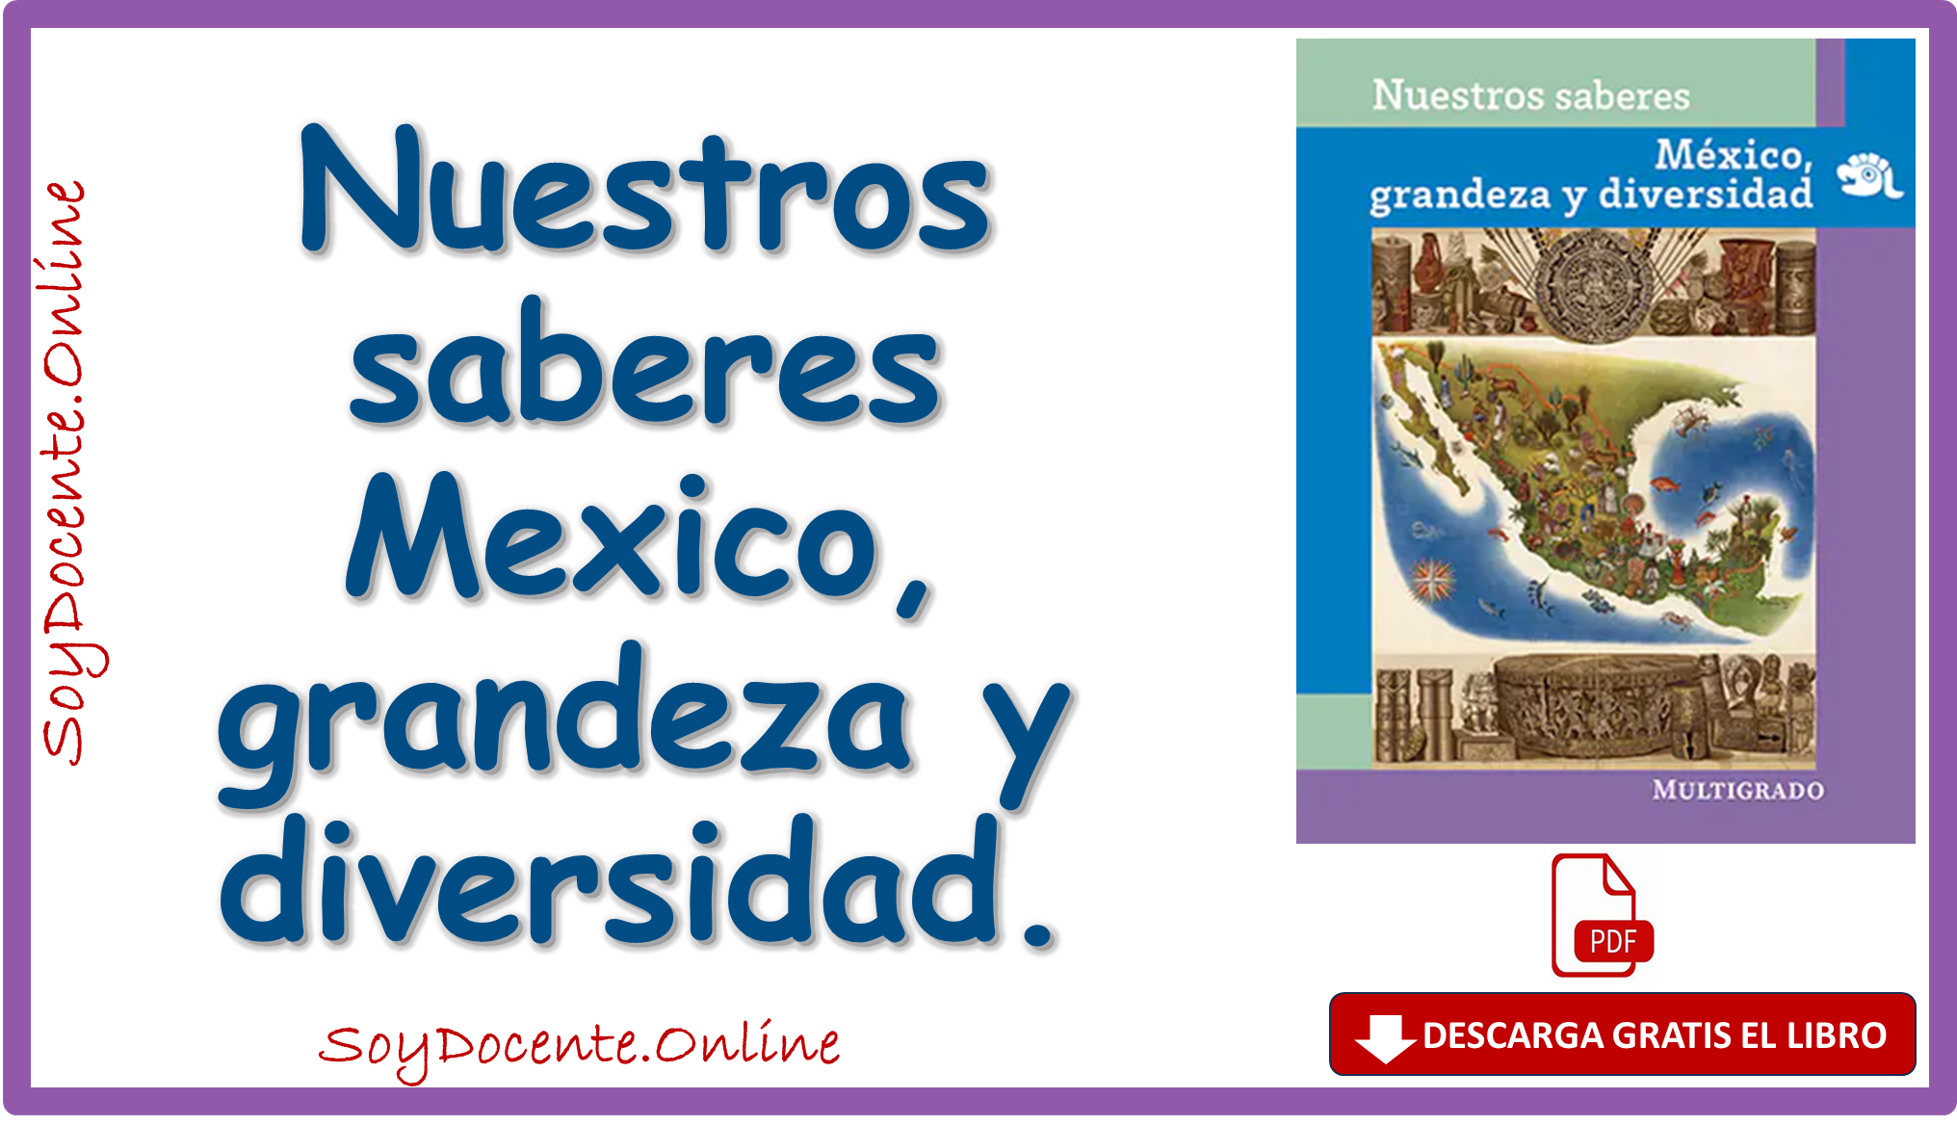 Descarga Libro de Nuestros saberes México, Grandeza y diversidad, quinto grado de Primaria de la SEP, distribuido por la CONALITEG, en PDF gratuito.